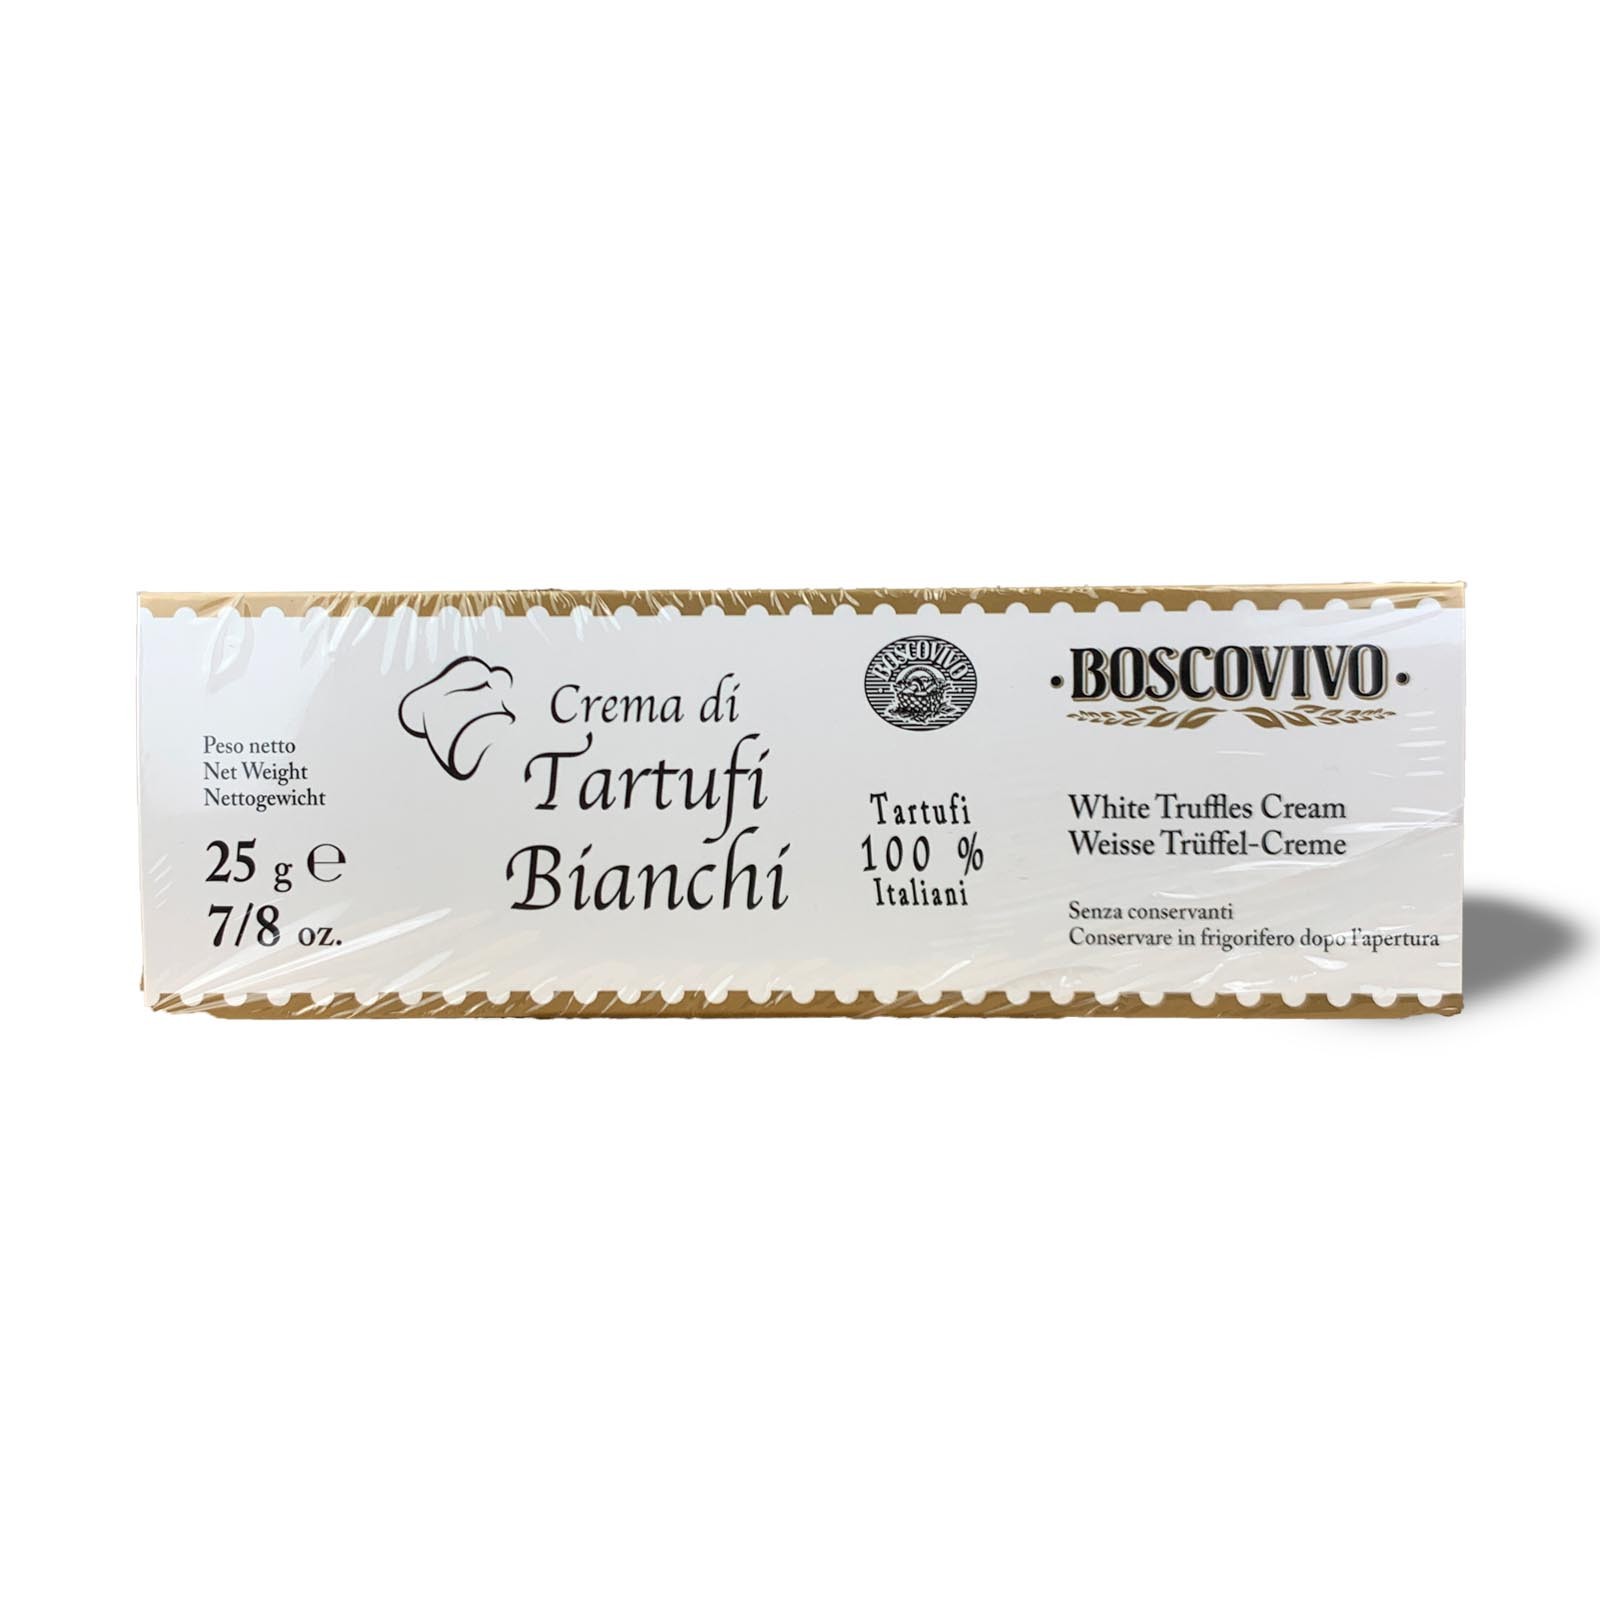 White Truffle Cream 56% - Tuber Magnatum Pico - 100% Italian.